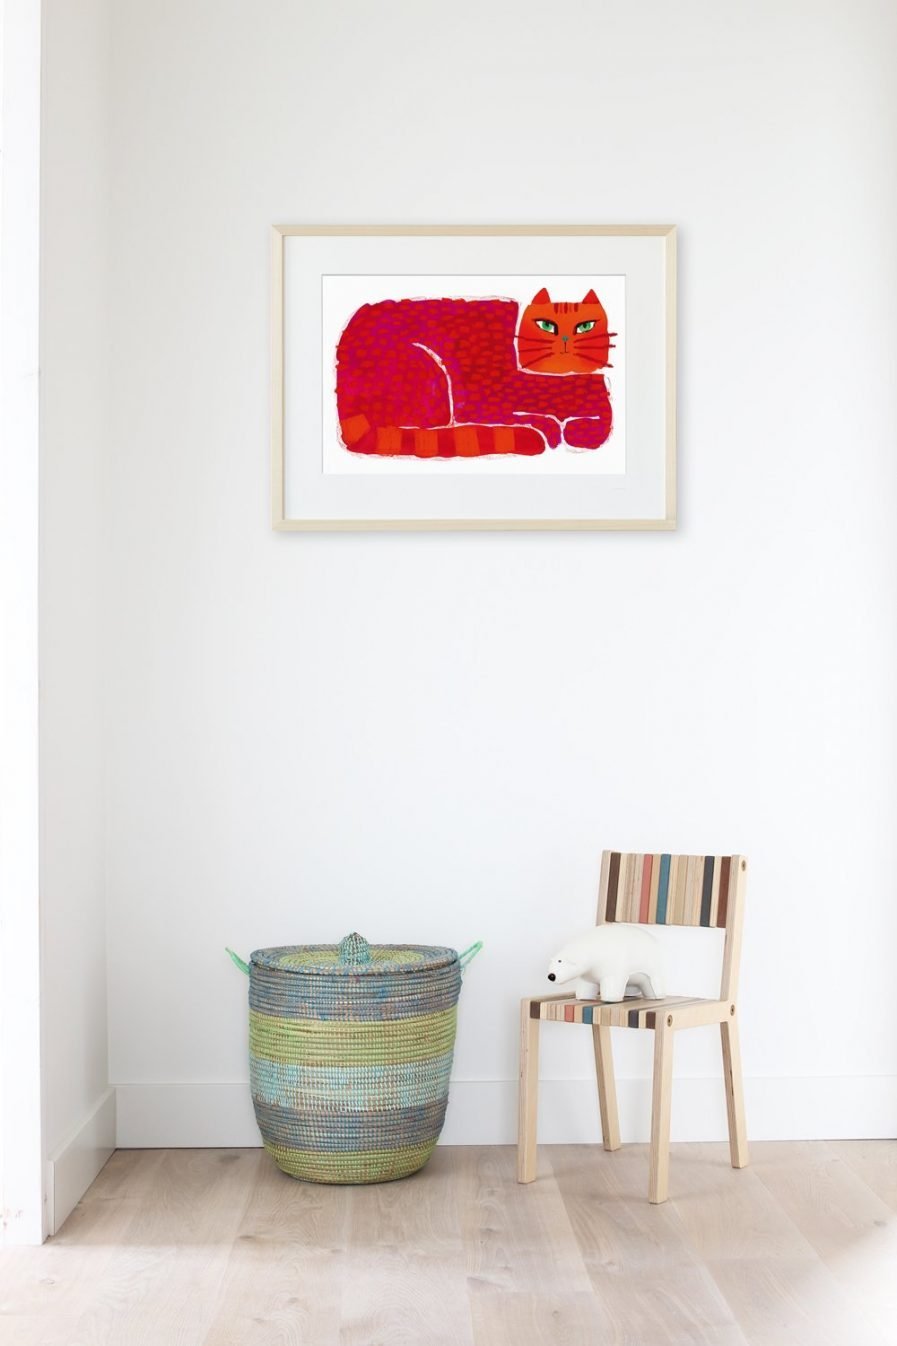 We zien een weldoorvoede poes liggen en ons aankijken, alsof de rood-oranje kat wil zeggen: "Hoezo?"